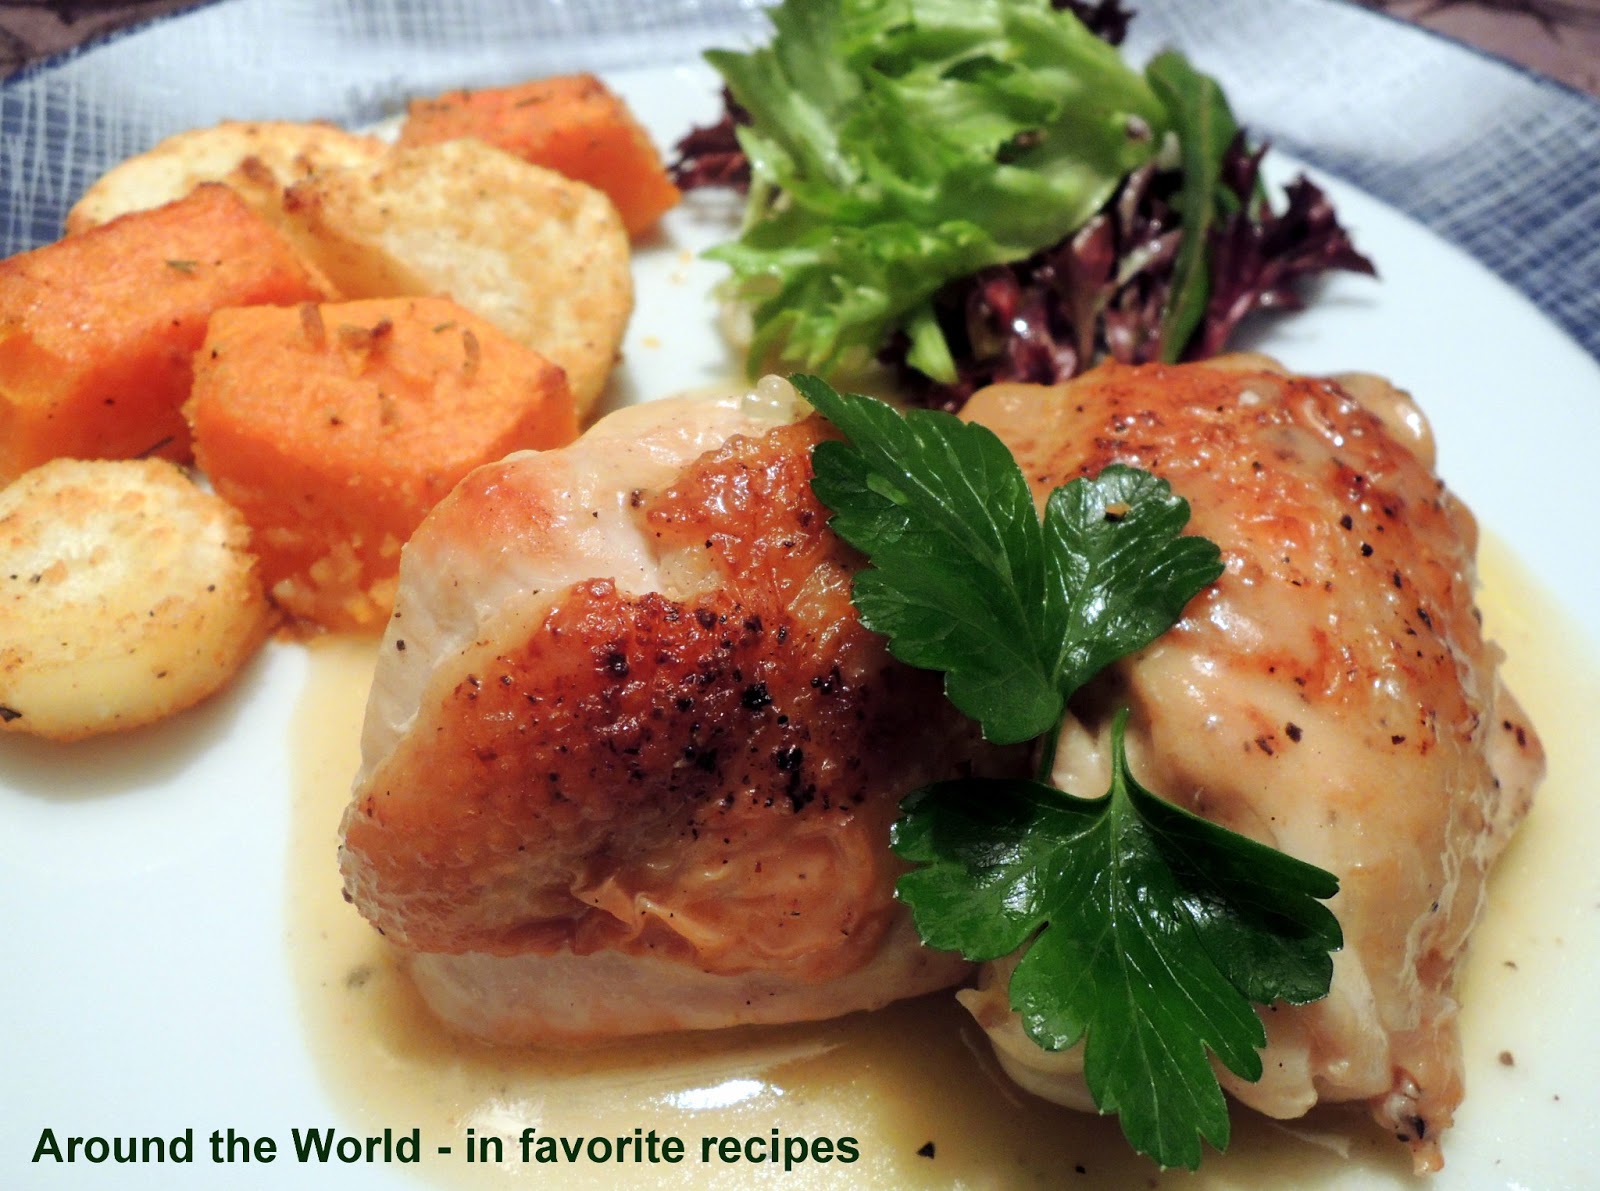 around-the-world-in-favorite-recipes-napoleon-s-chicken-marengo-chicken